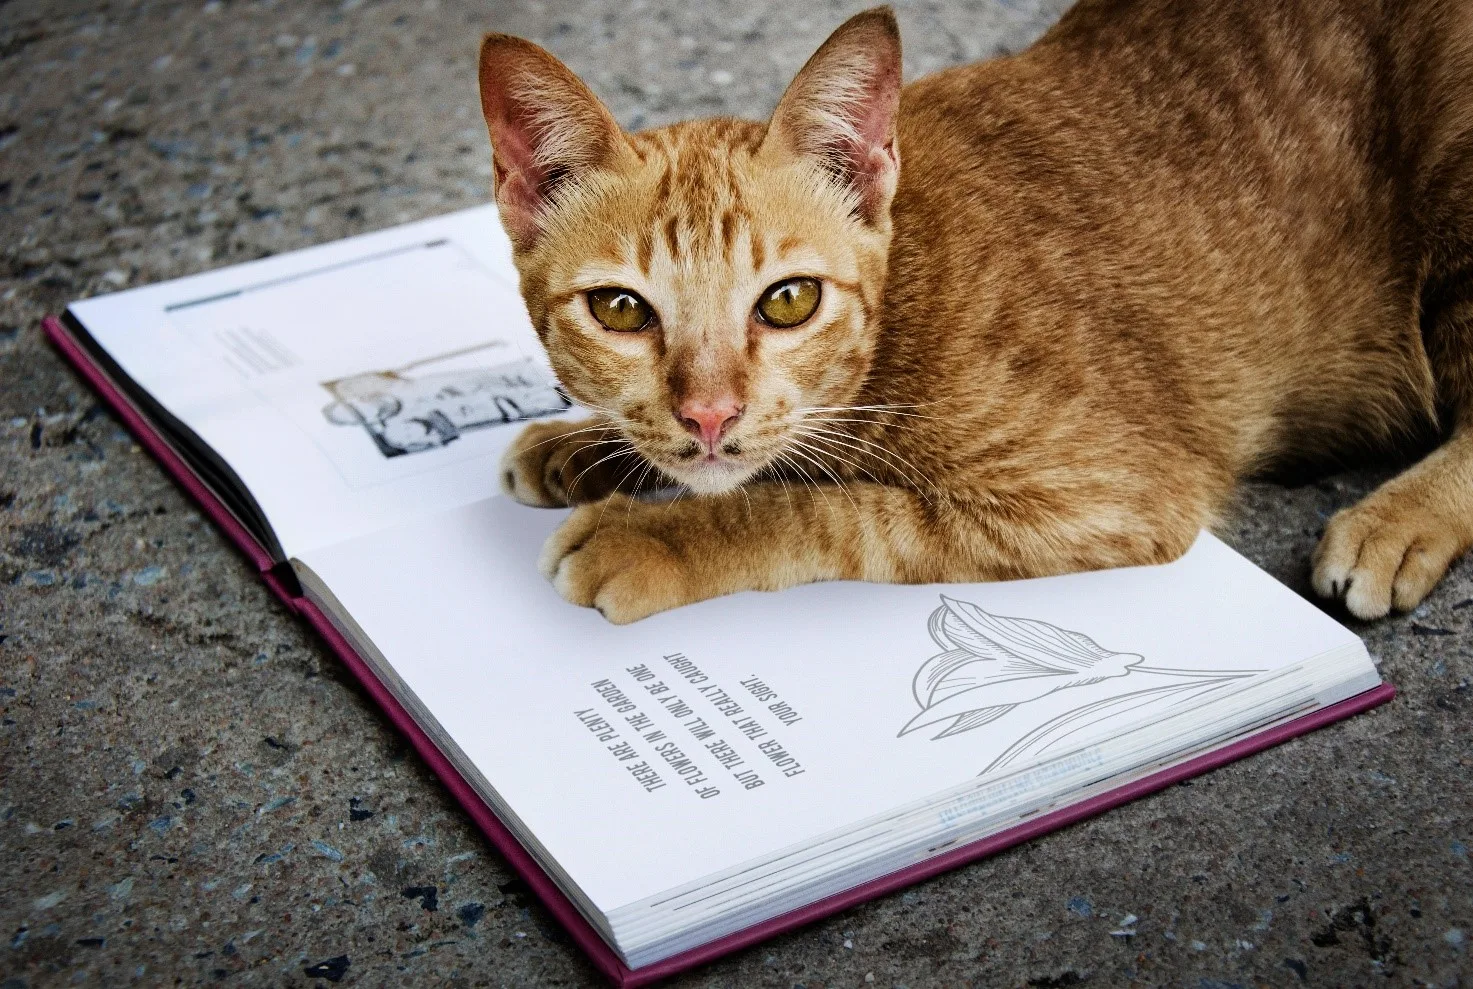 Libri e storie di gatti. Gatti che raccontano storie o che leggono libri.